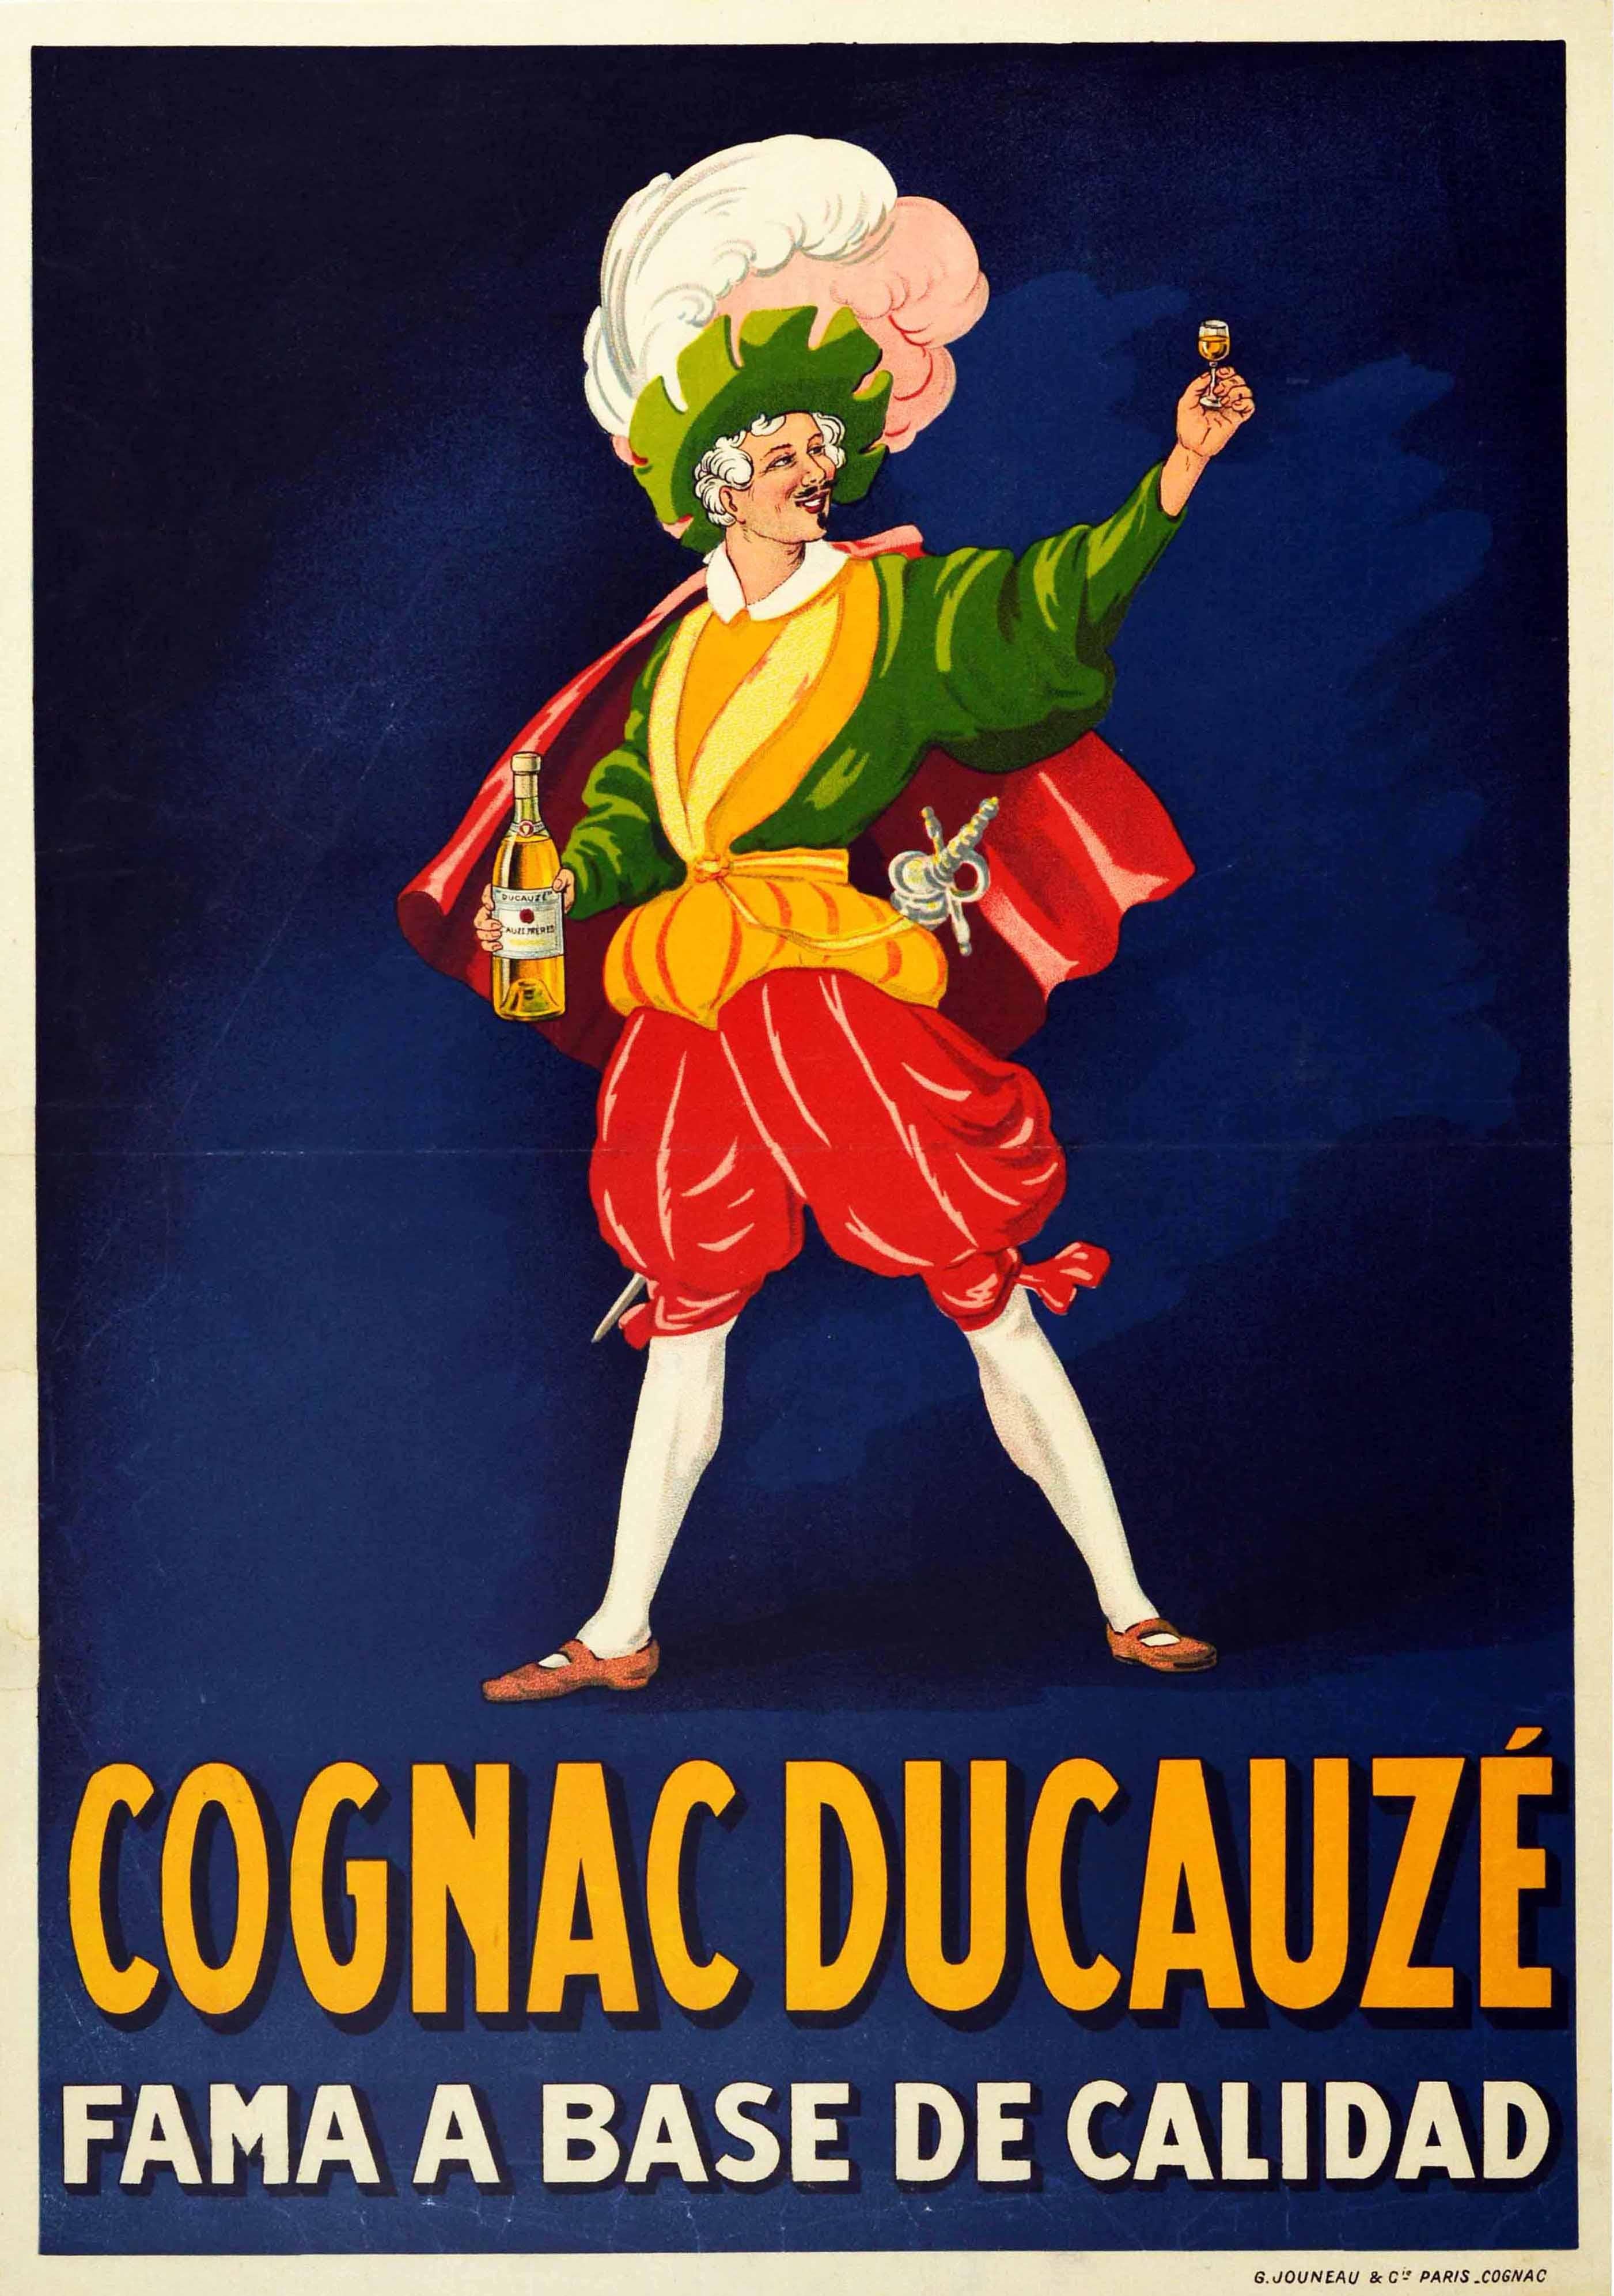 Unknown Print - Original Antique Drink Poster Cognac Ducauze Fama A Base De Calidad Fame Quality